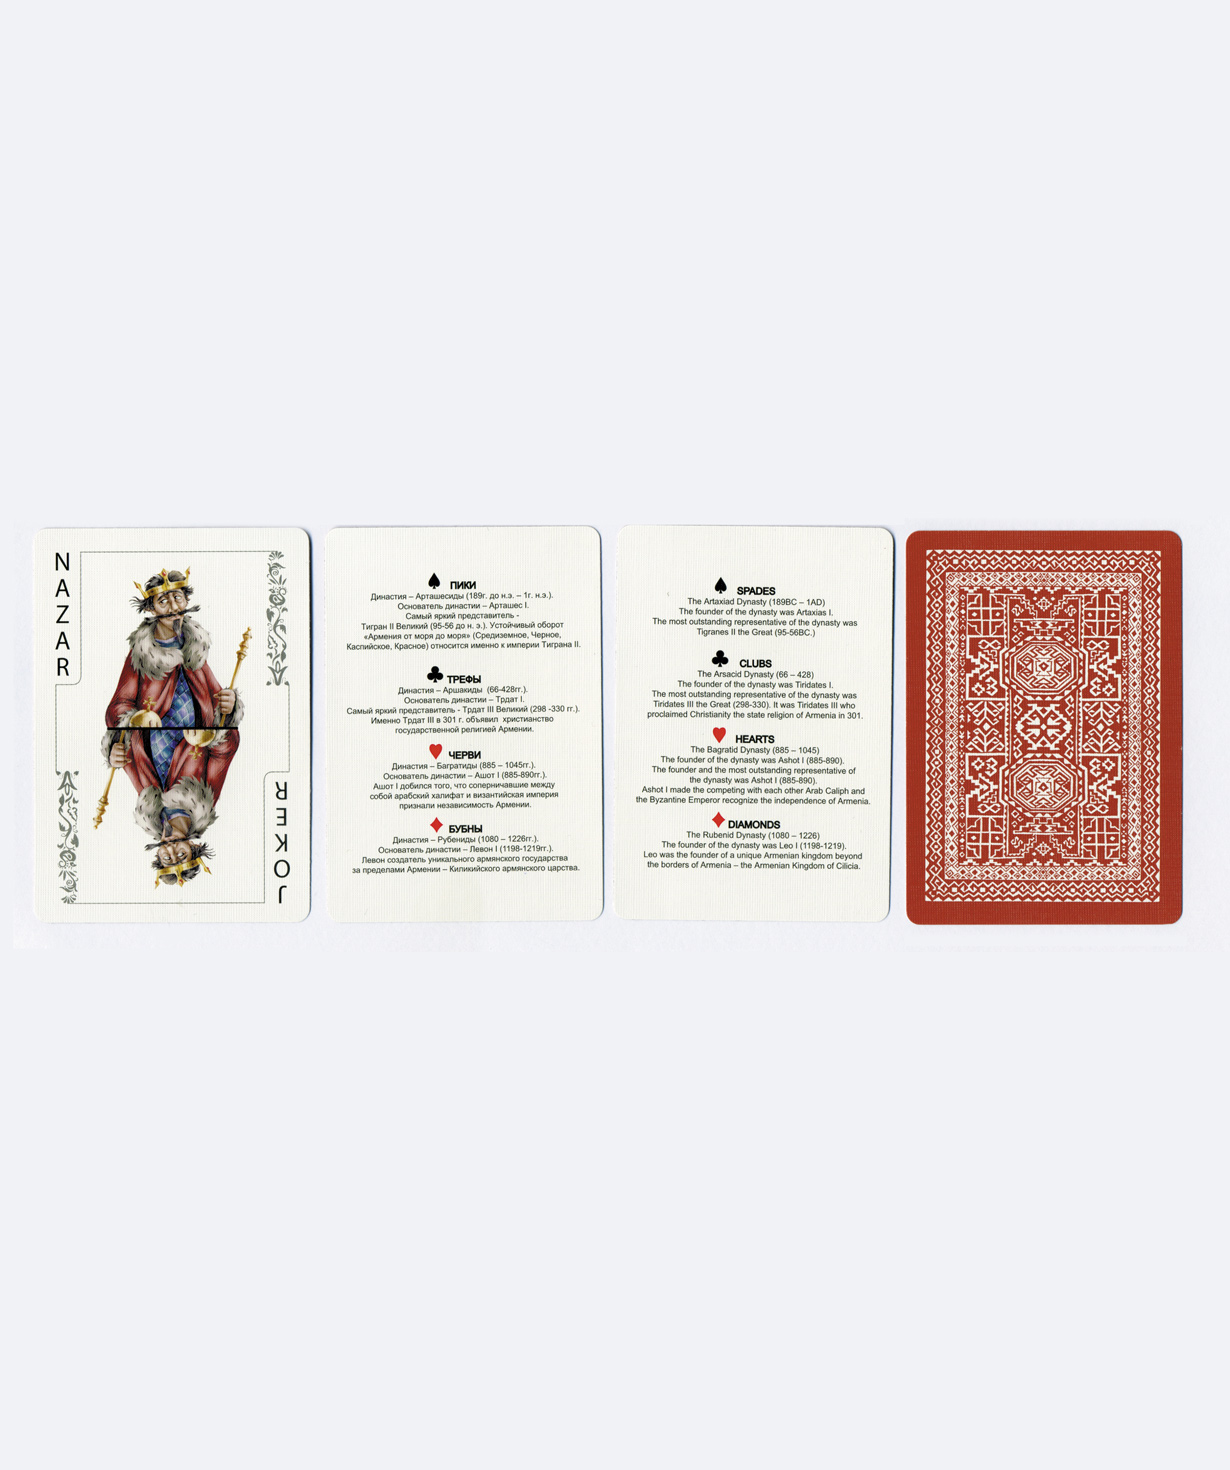 Игральные карты ''Armenian Playing Cards'' красные